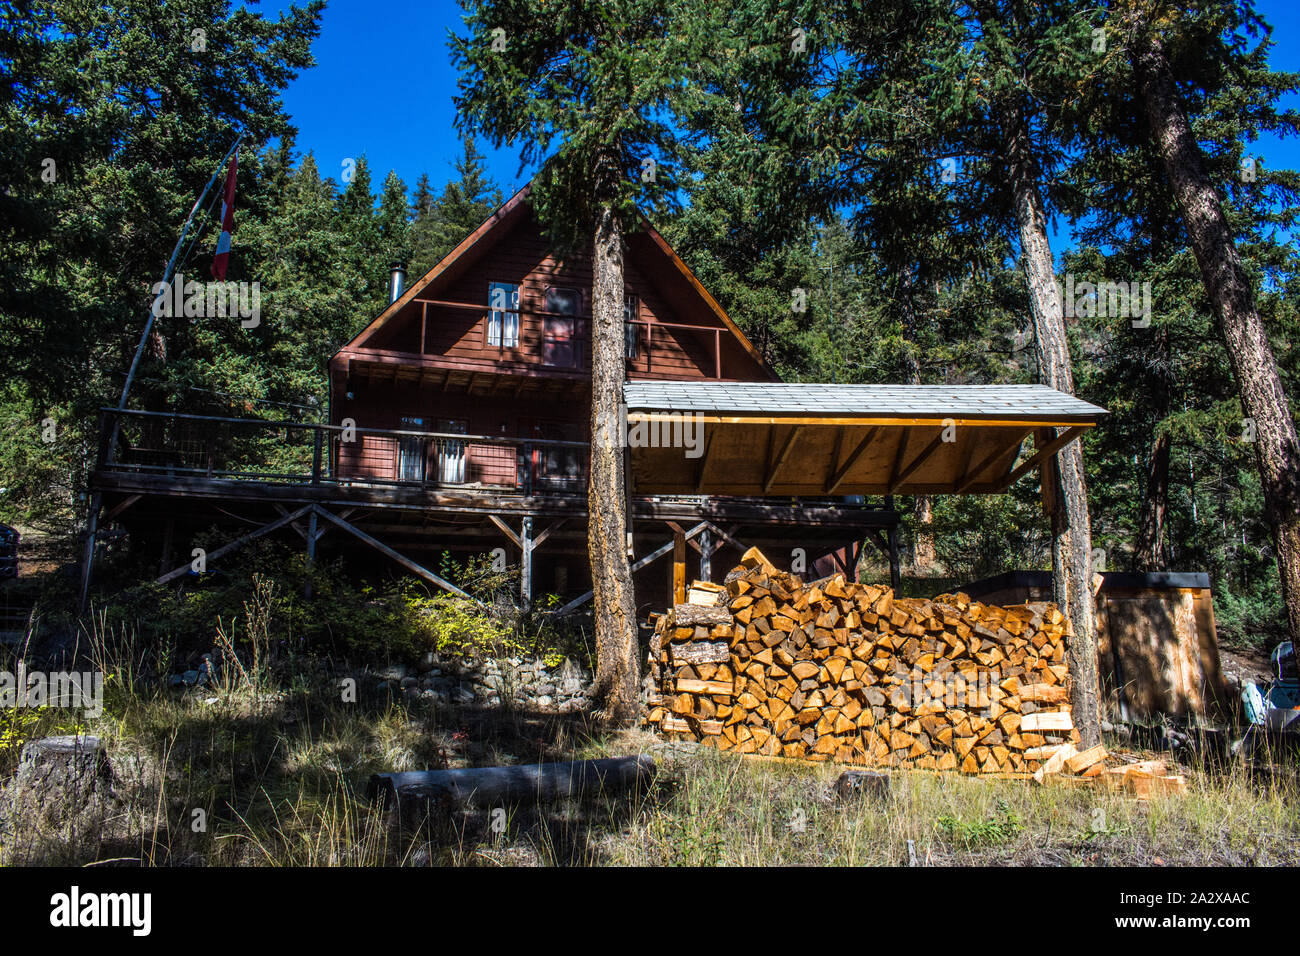 A family cabin at Loon lake, BC Canada Stock Photo